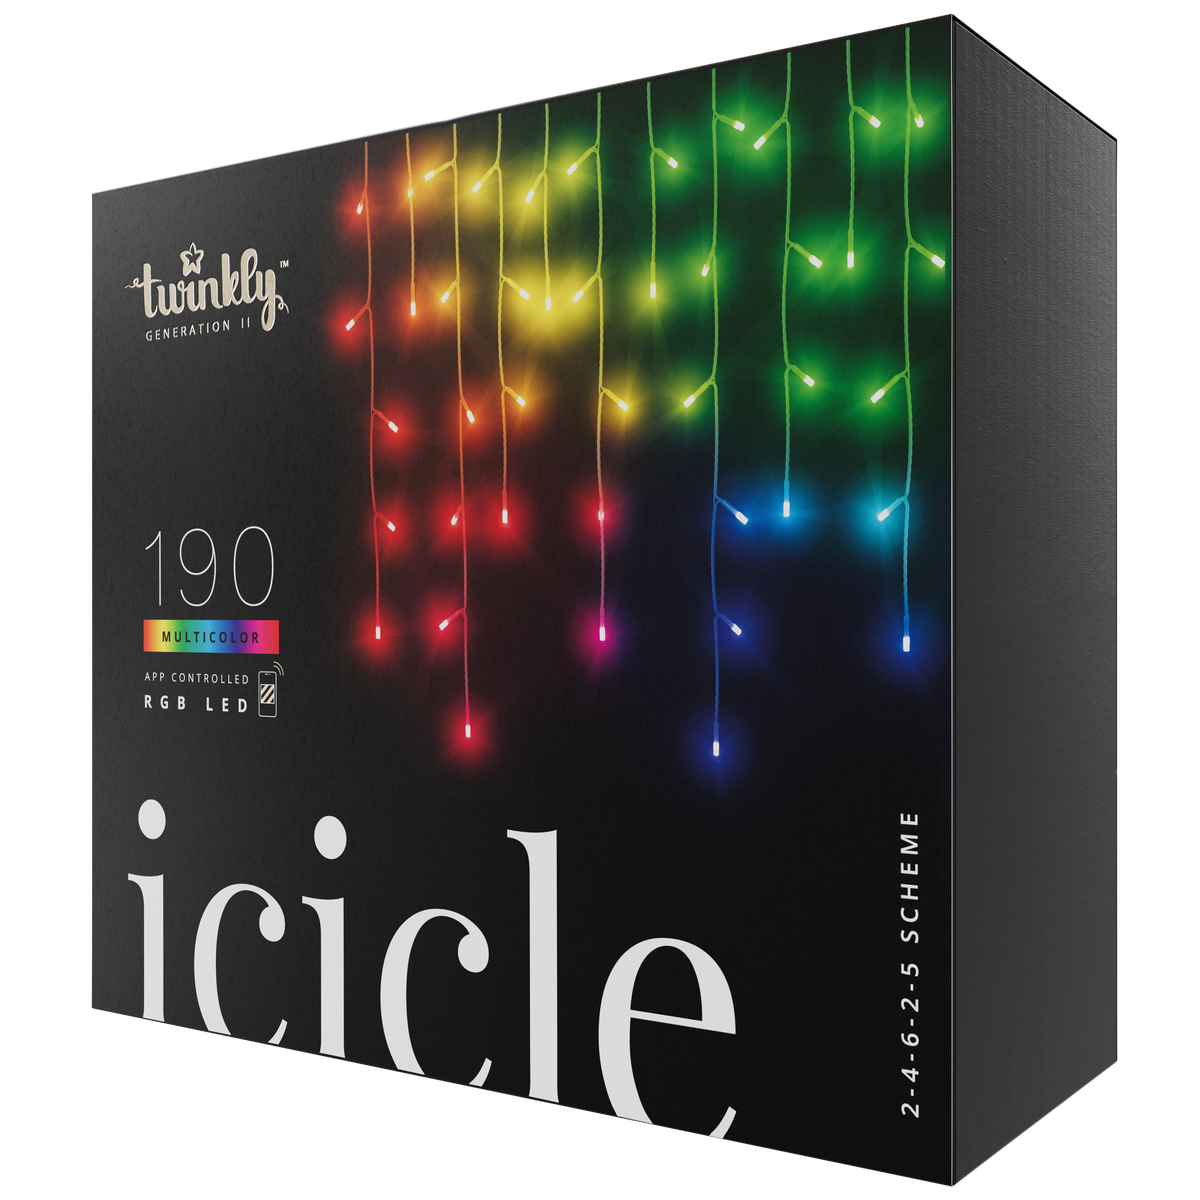 Icicle (flerfärgad utgåva)